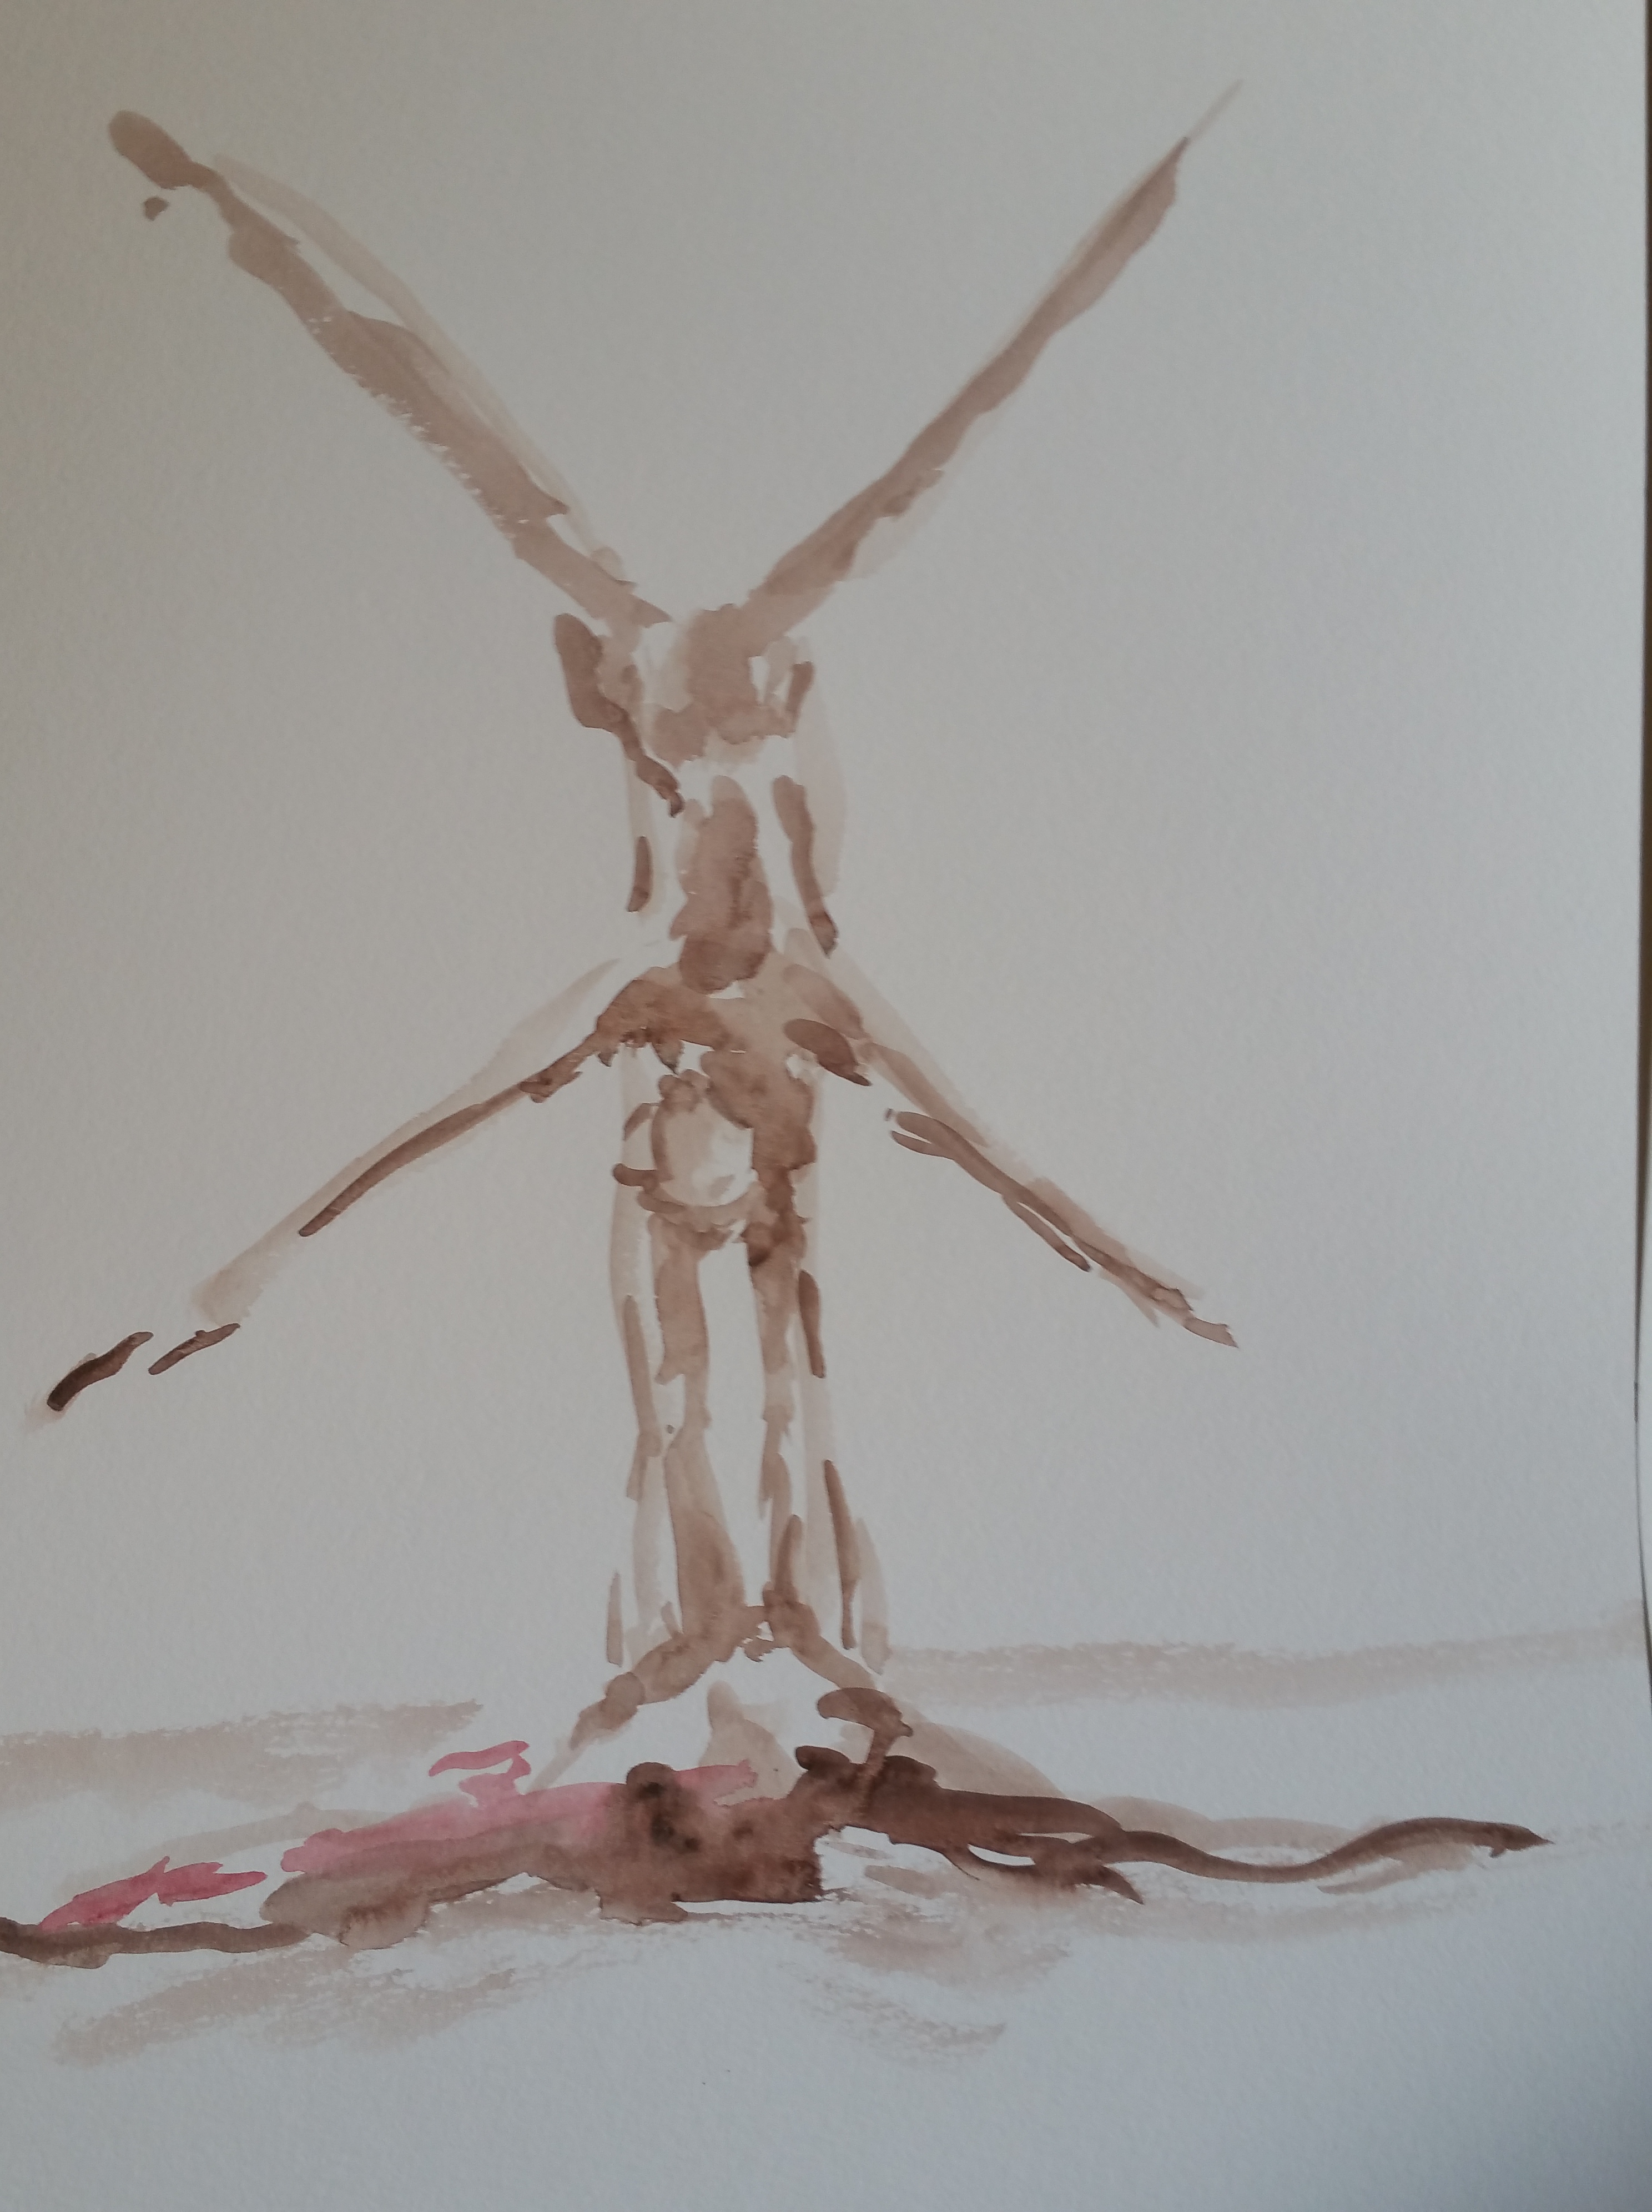  Dessin aquarelle acrobate sur papier  cours de dessin 